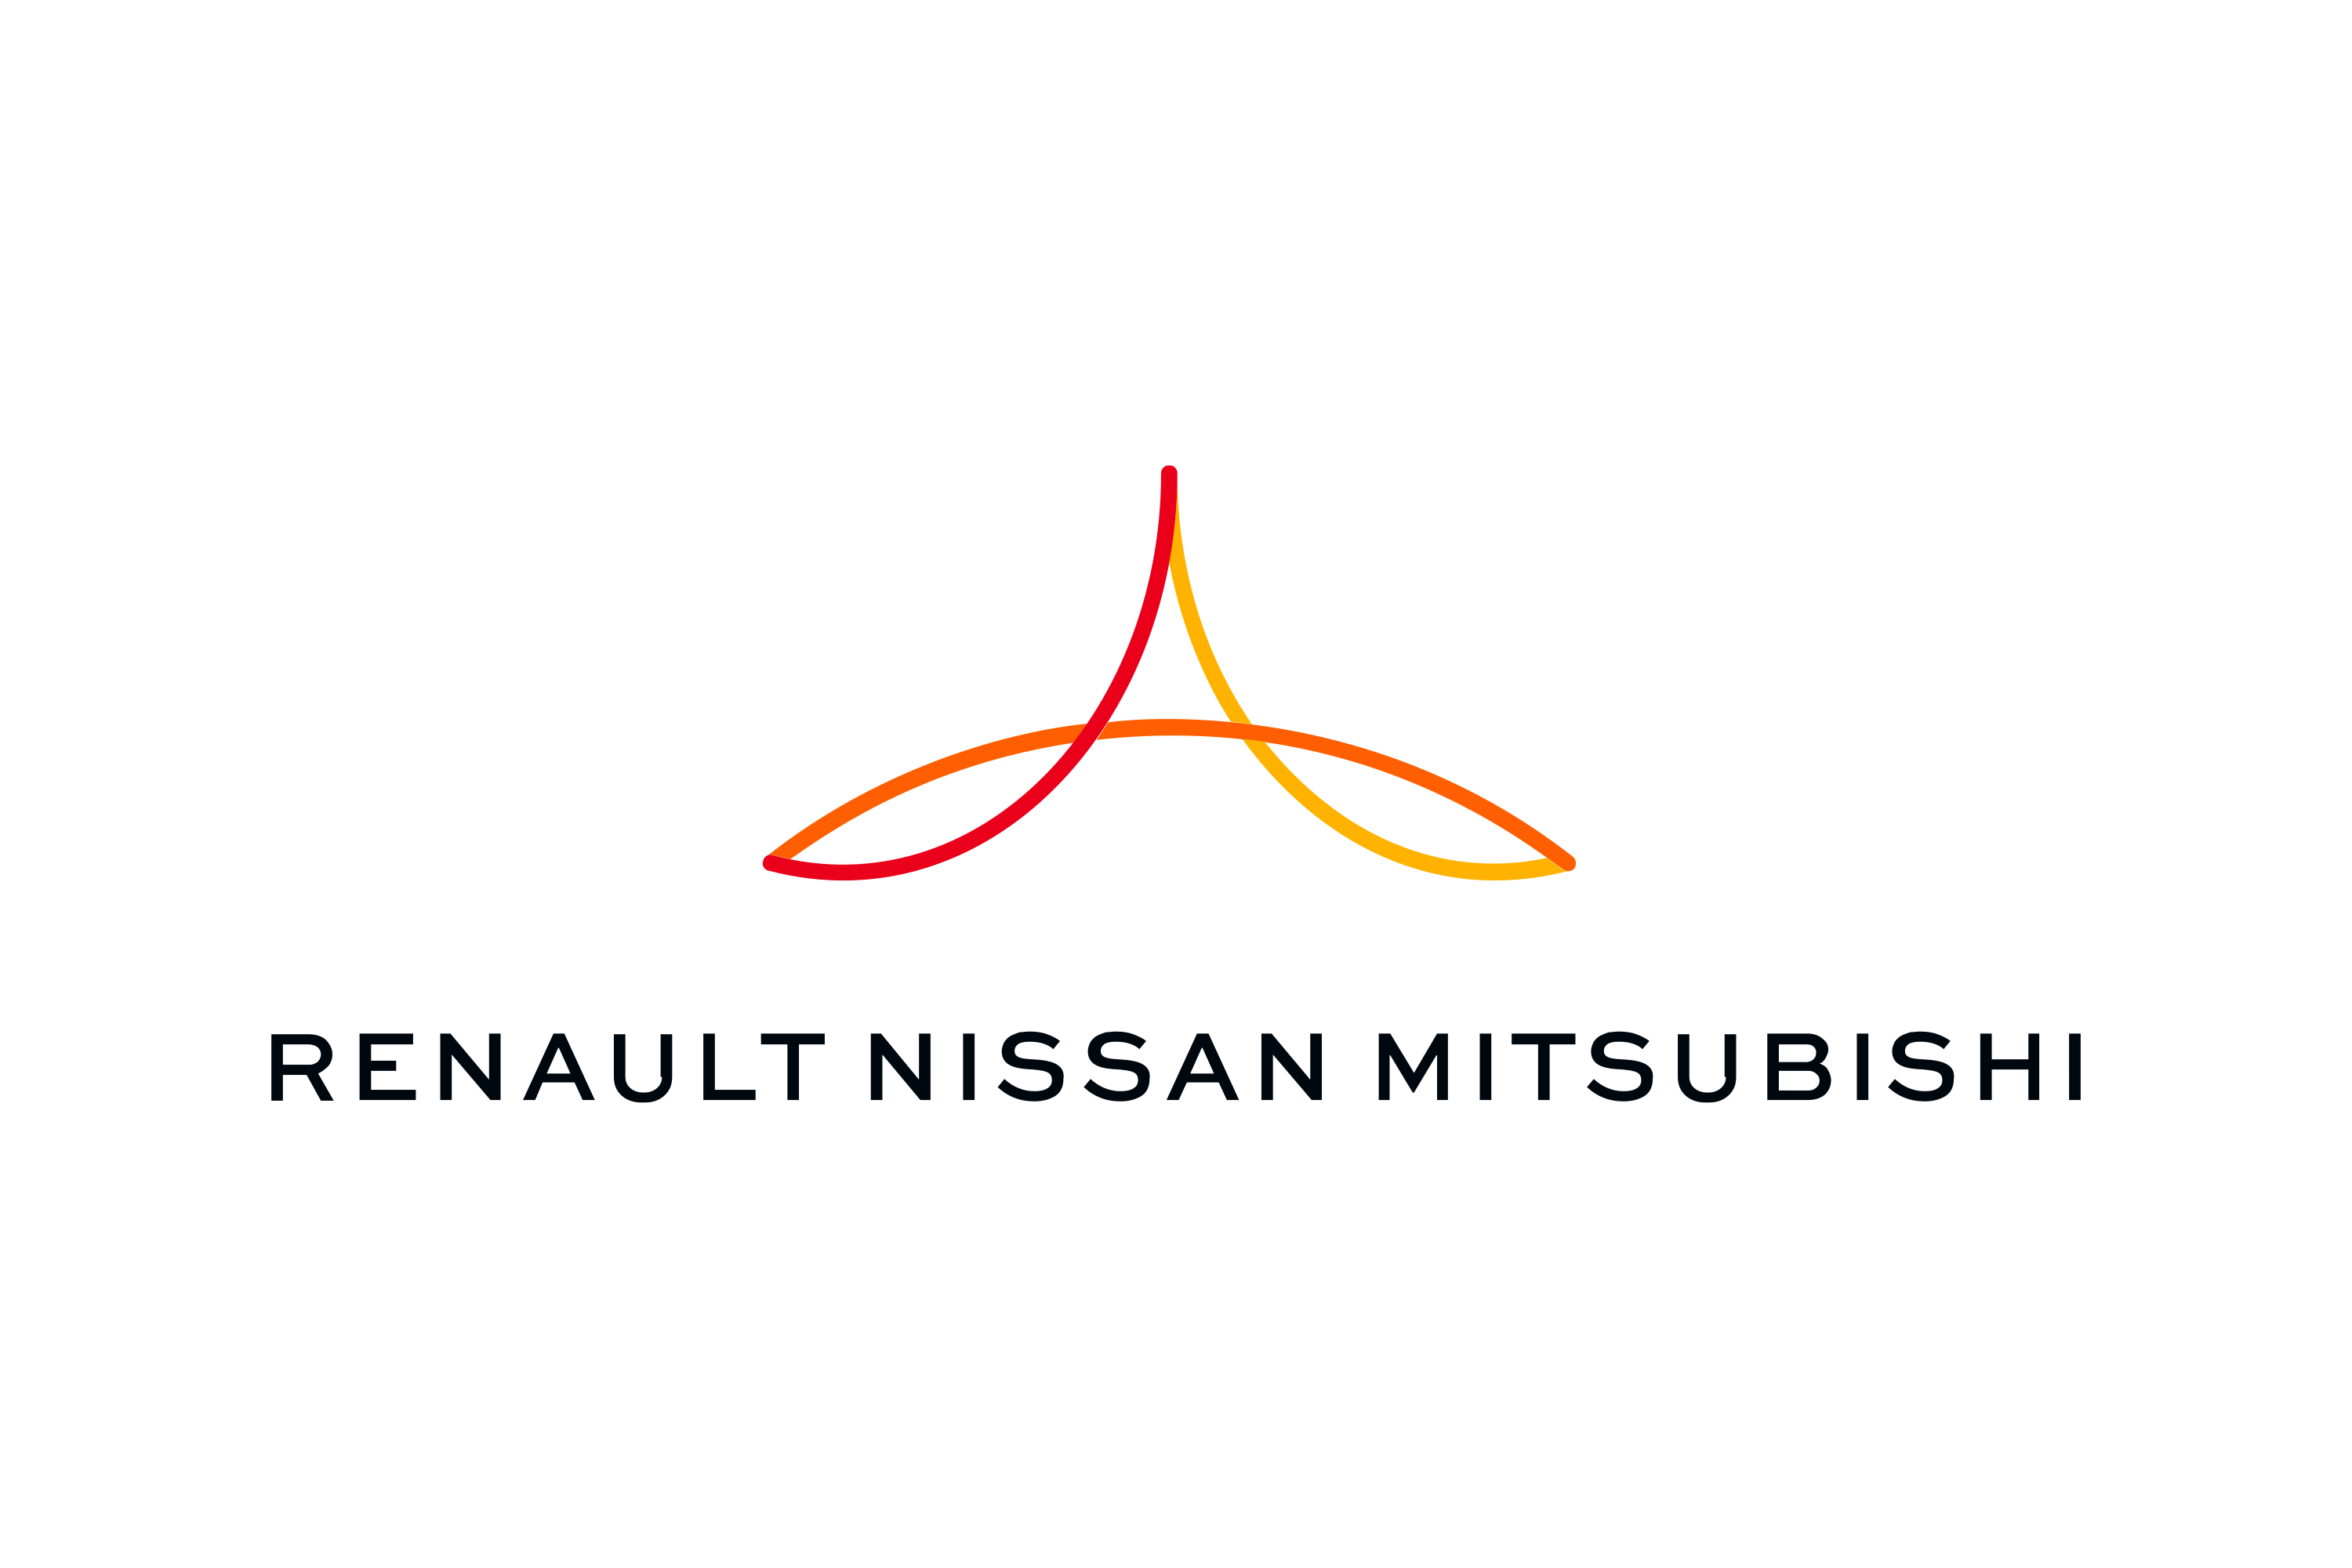 logo mitsubishi png